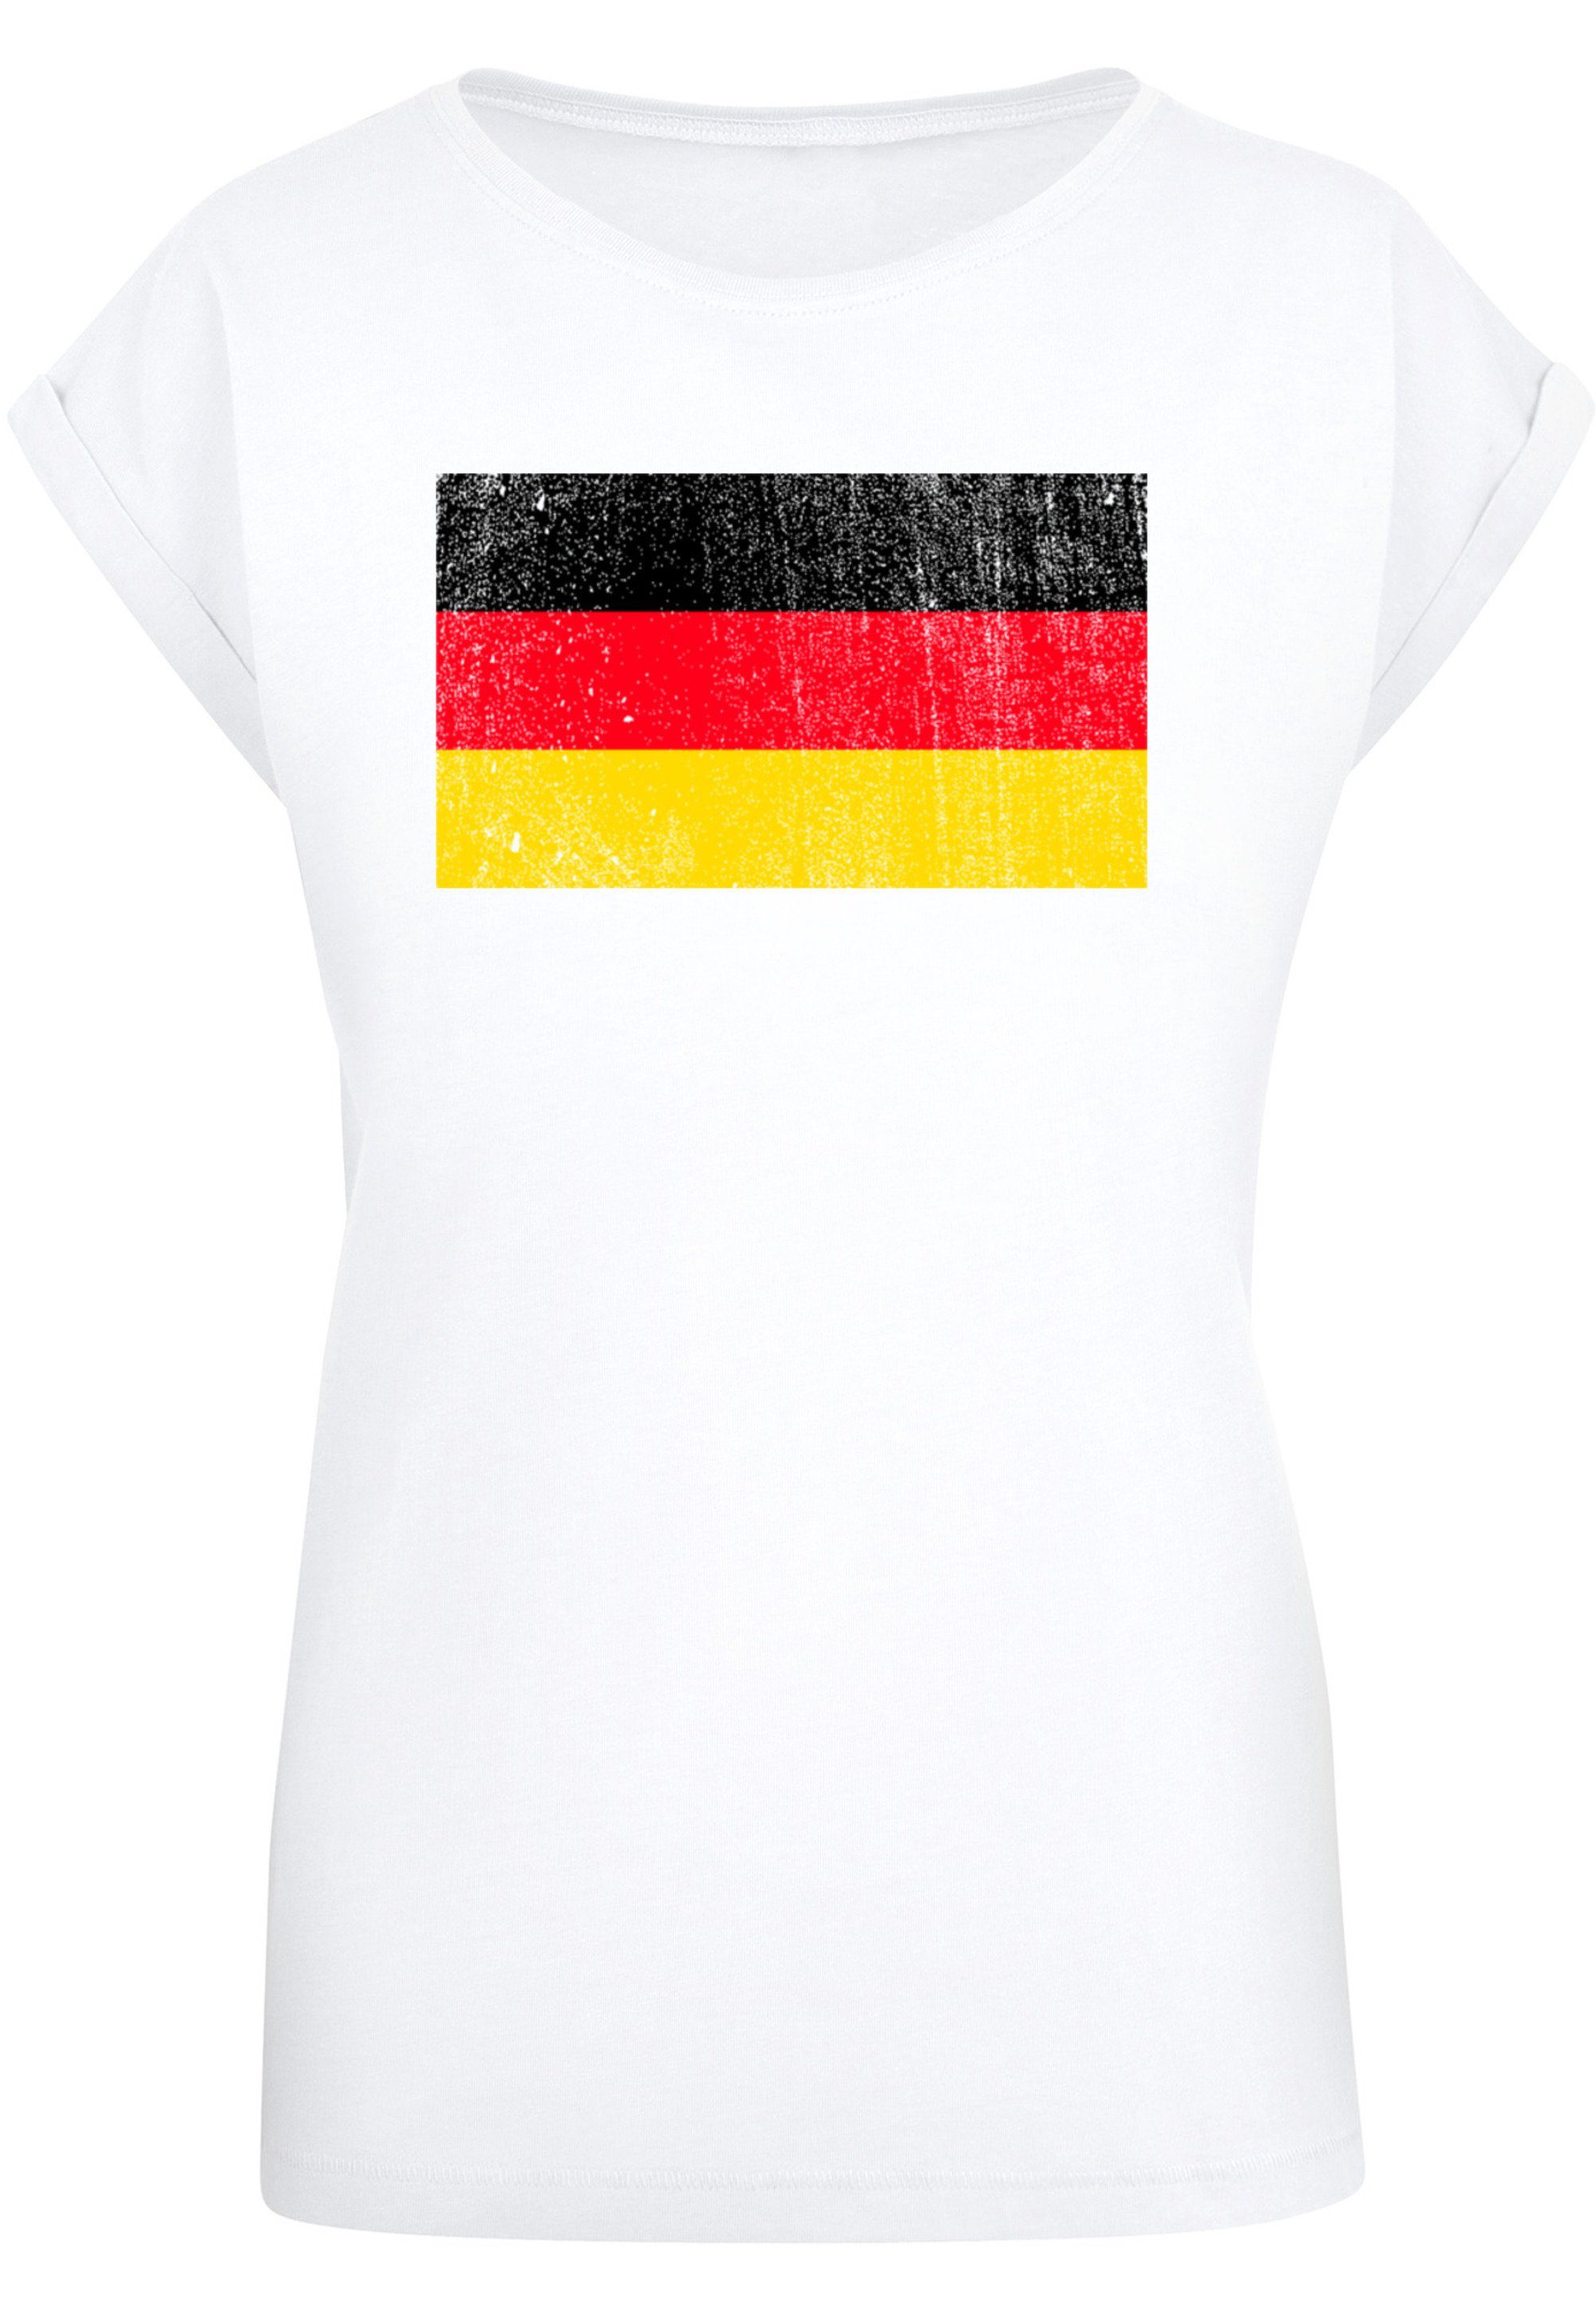 mit weicher F4NT4STIC Germany T-Shirt hohem Tragekomfort Flagge Deutschland Print, Sehr Baumwollstoff distressed